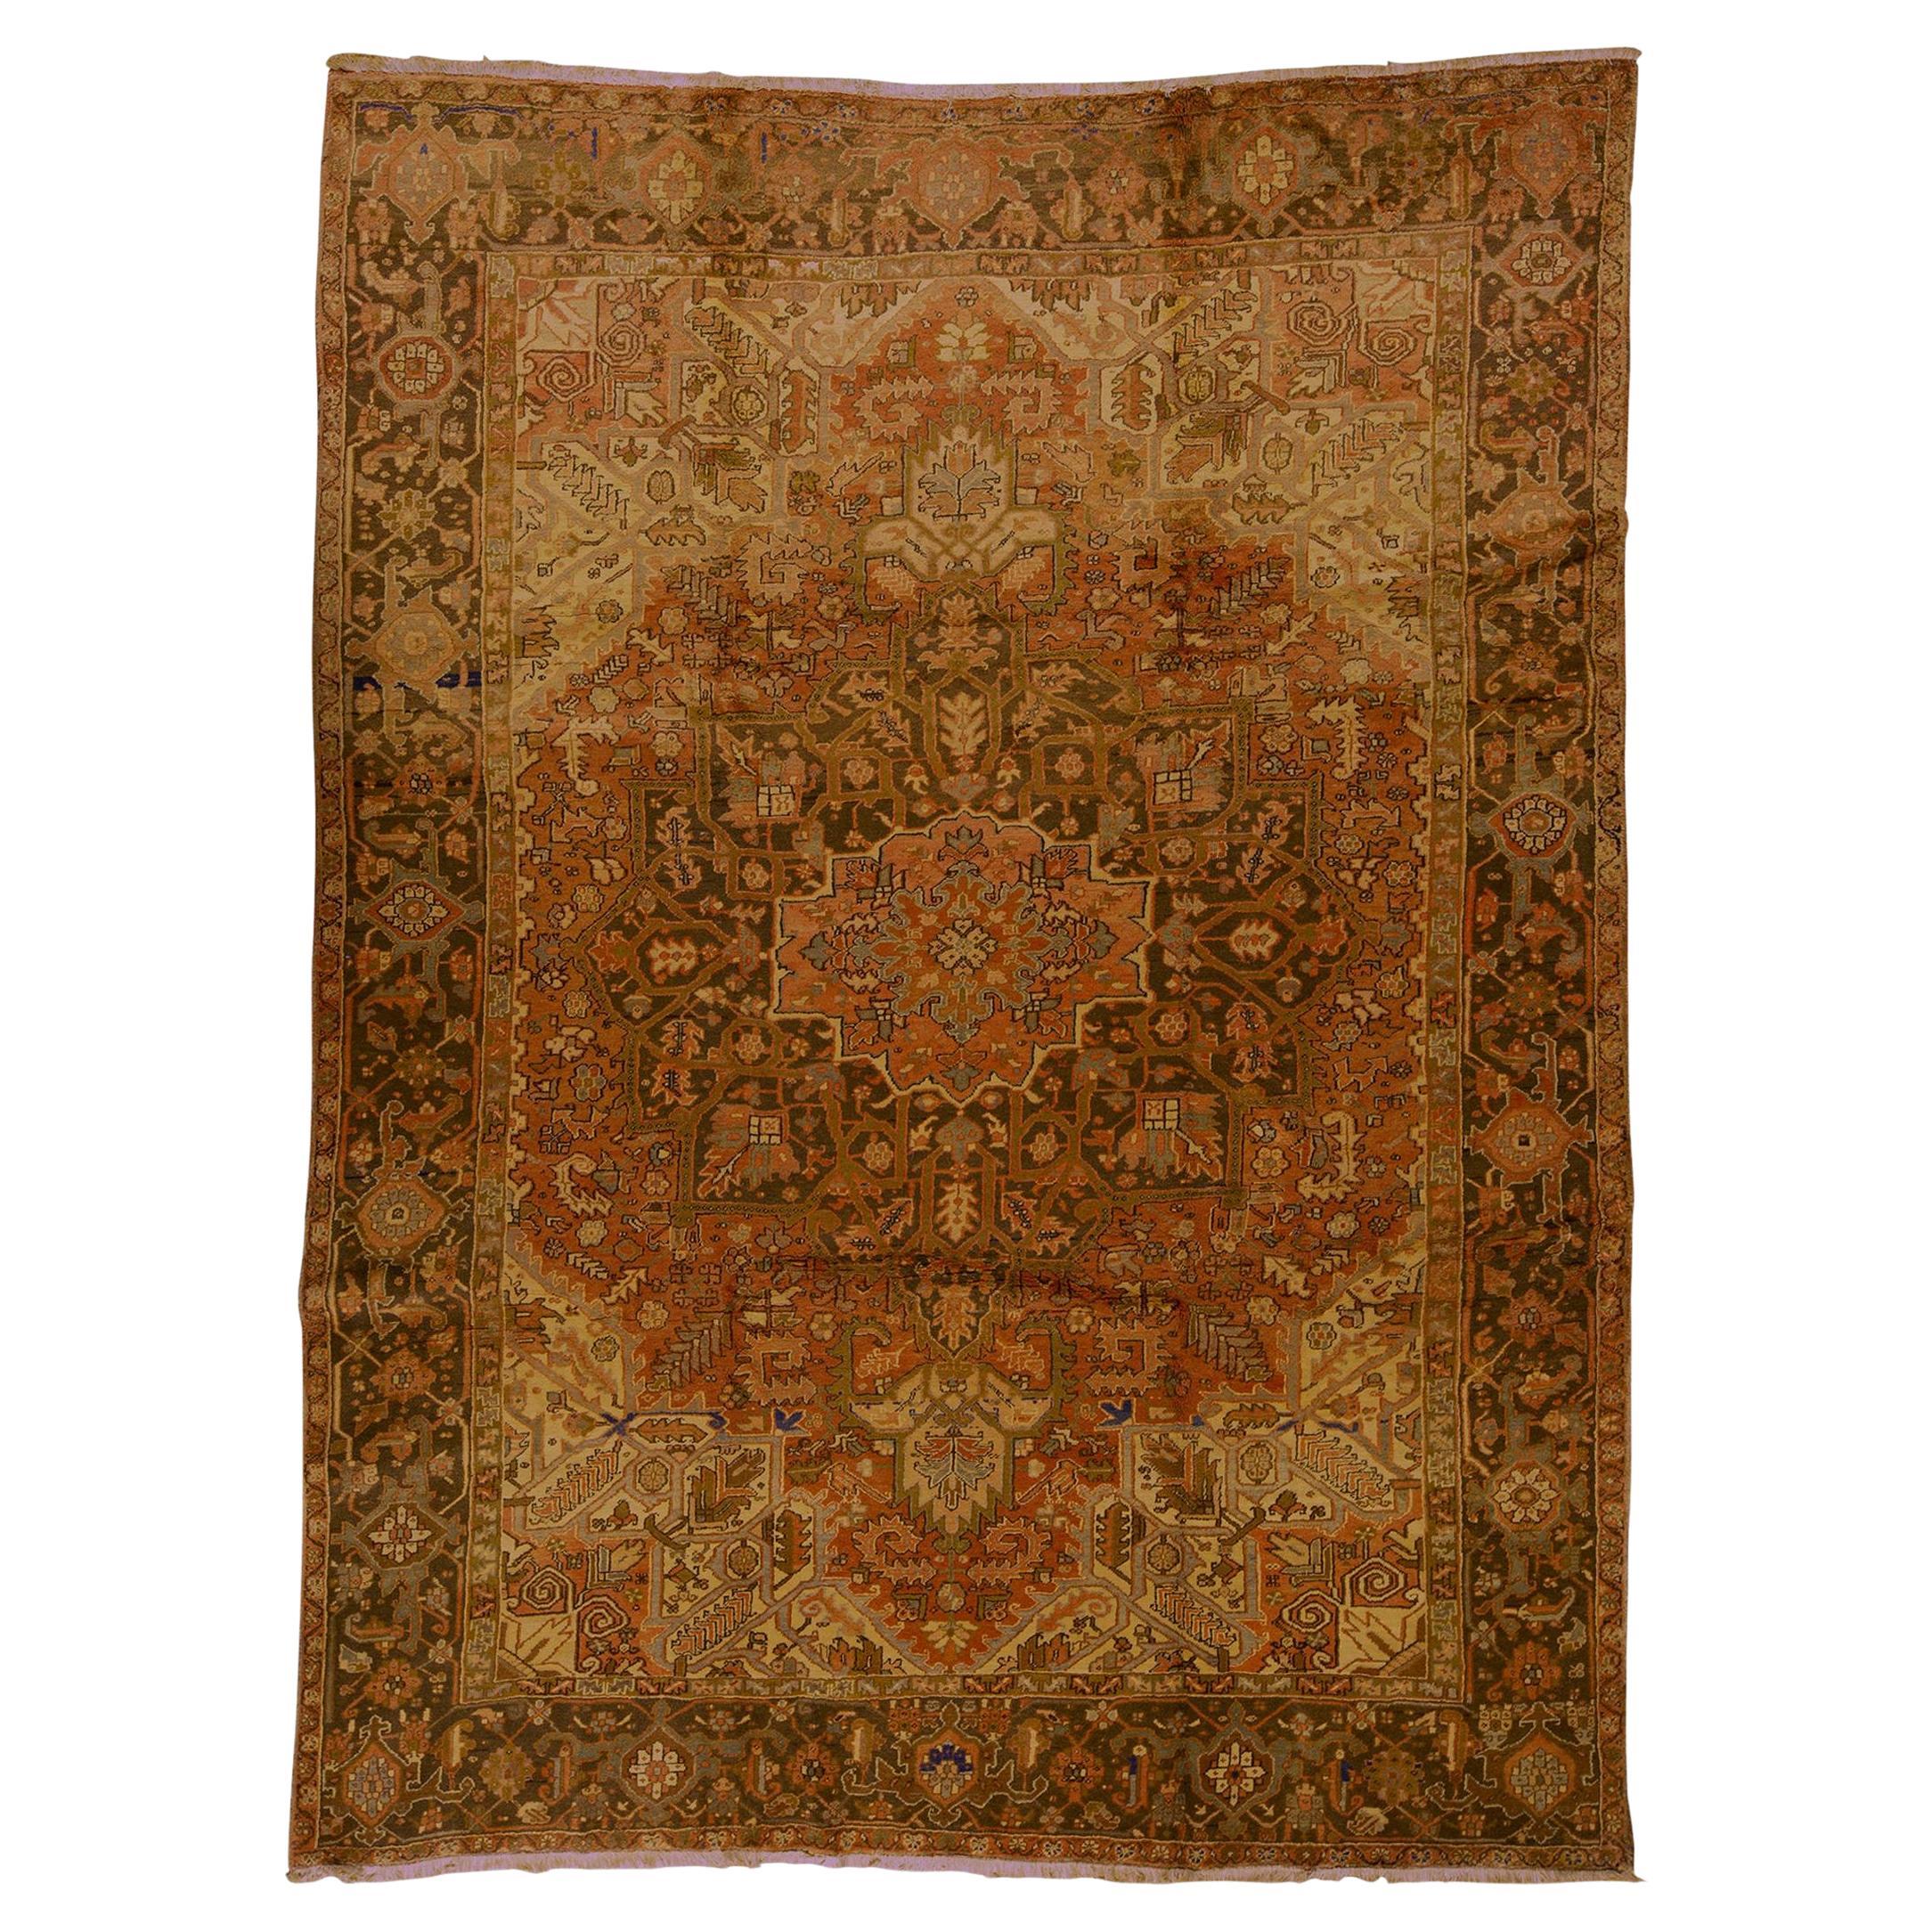   Antiker persischer handgewebter, feiner, traditioneller, luxuriöser Teppich aus Wolle in Rost/Braun